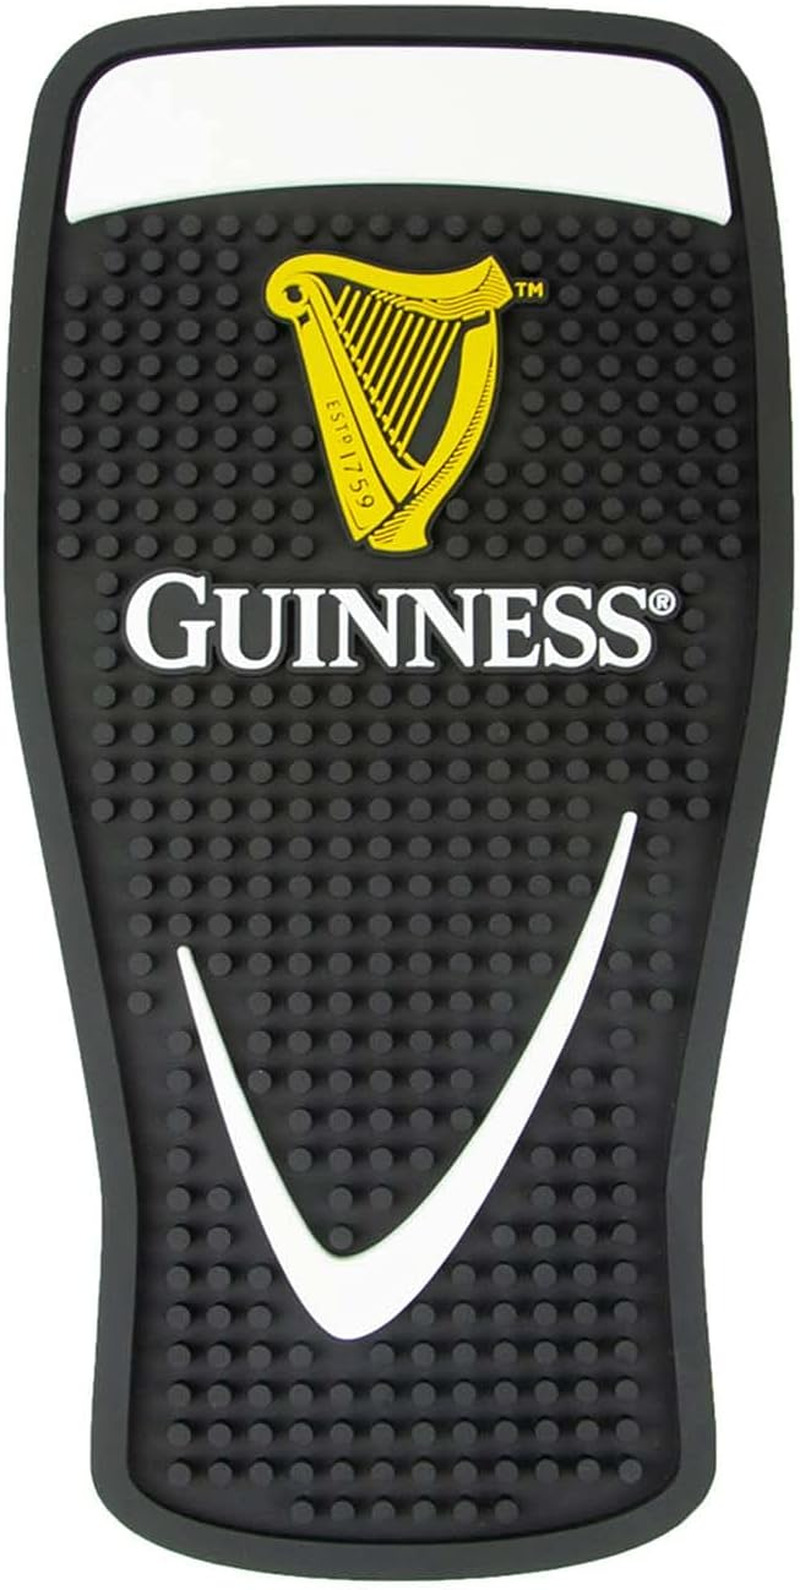 Guinness Gravity Pint Glass PVC Bar Mat | Guinness Official Merchandise No Spill